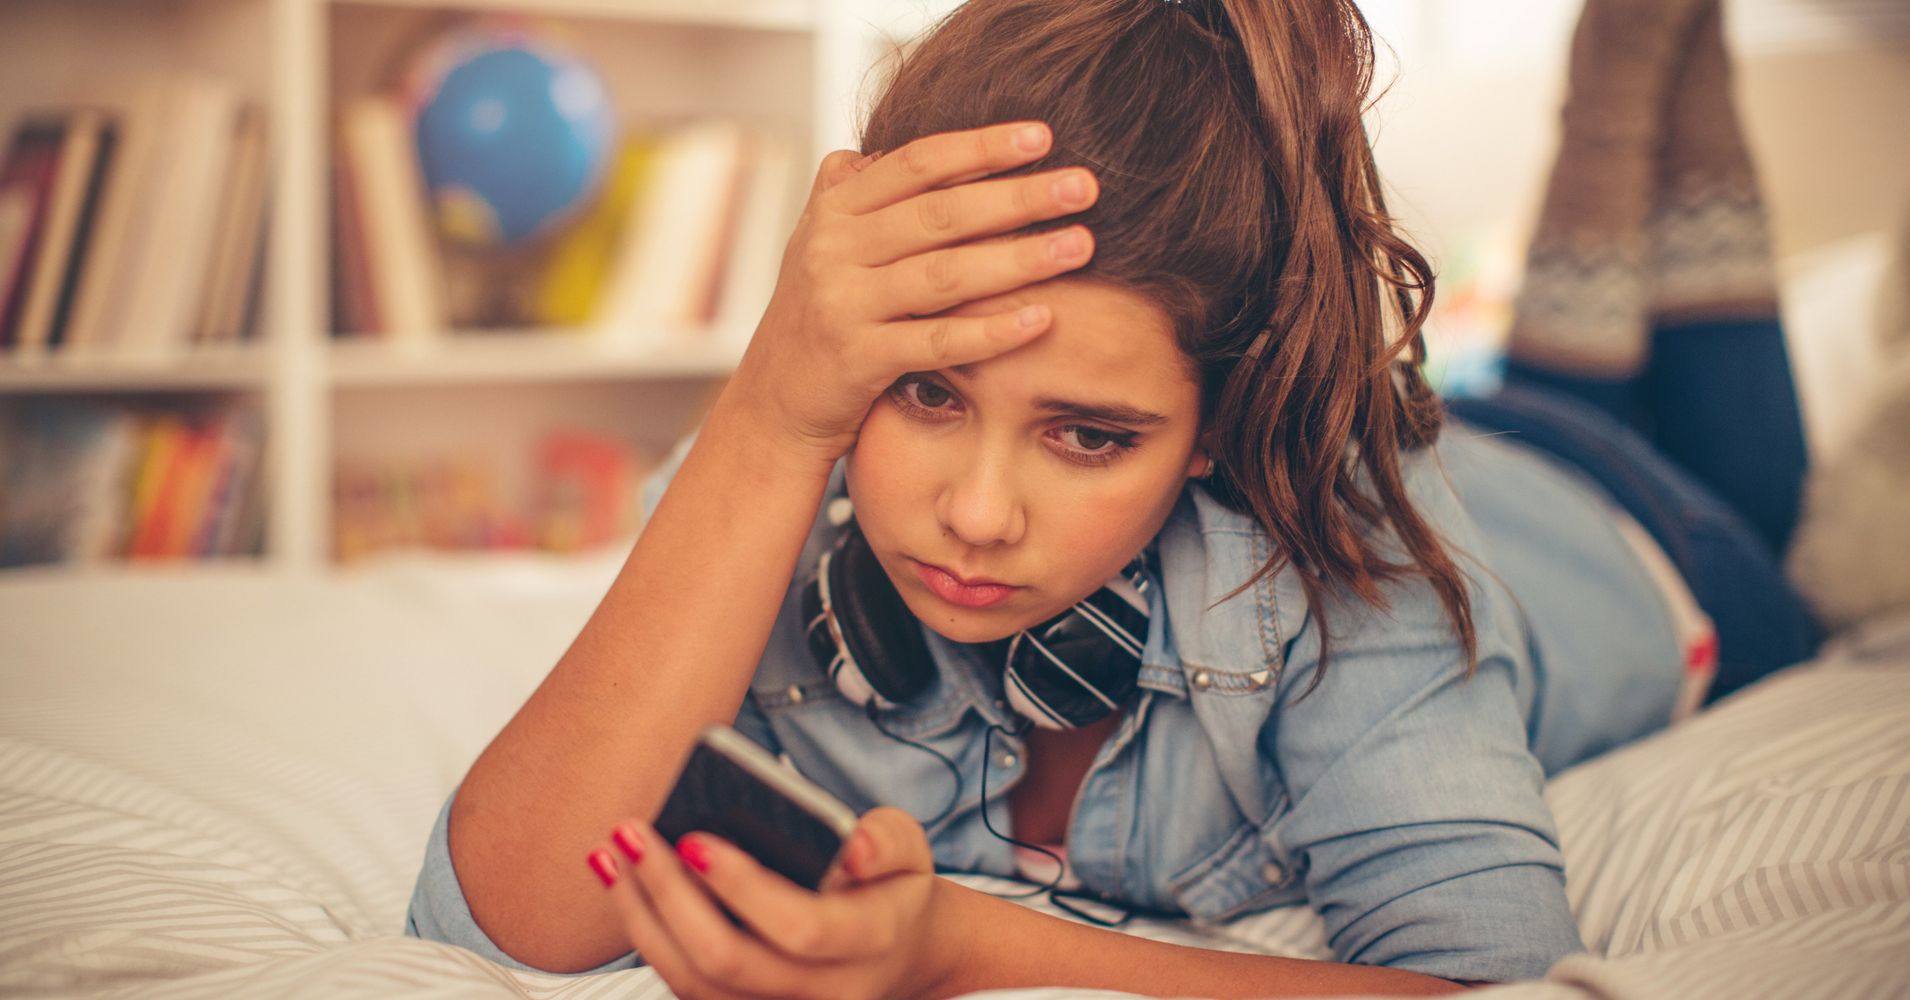 Video Games And Social Media Hurt Teens Sleep Study Says HuffPost